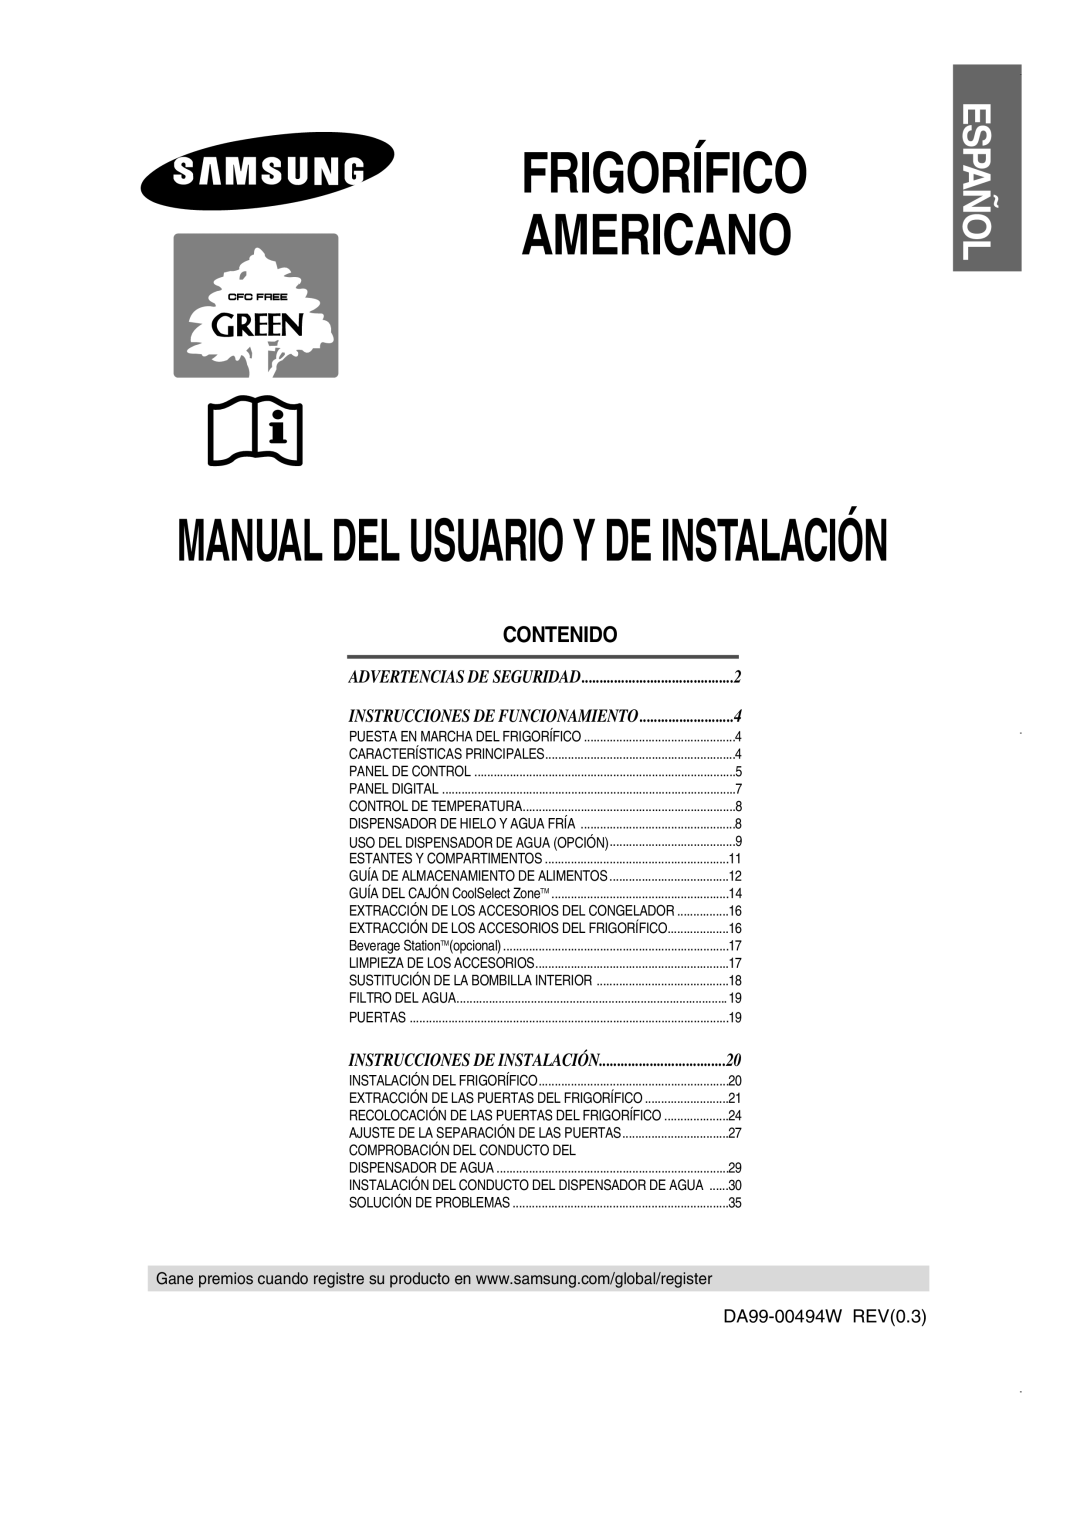 Samsung RS21NASW1/XES, RS21FJSM1/XES manual Contenido, Frigorífico Americano, Manual Del Usuario Y De Instalación, Español 